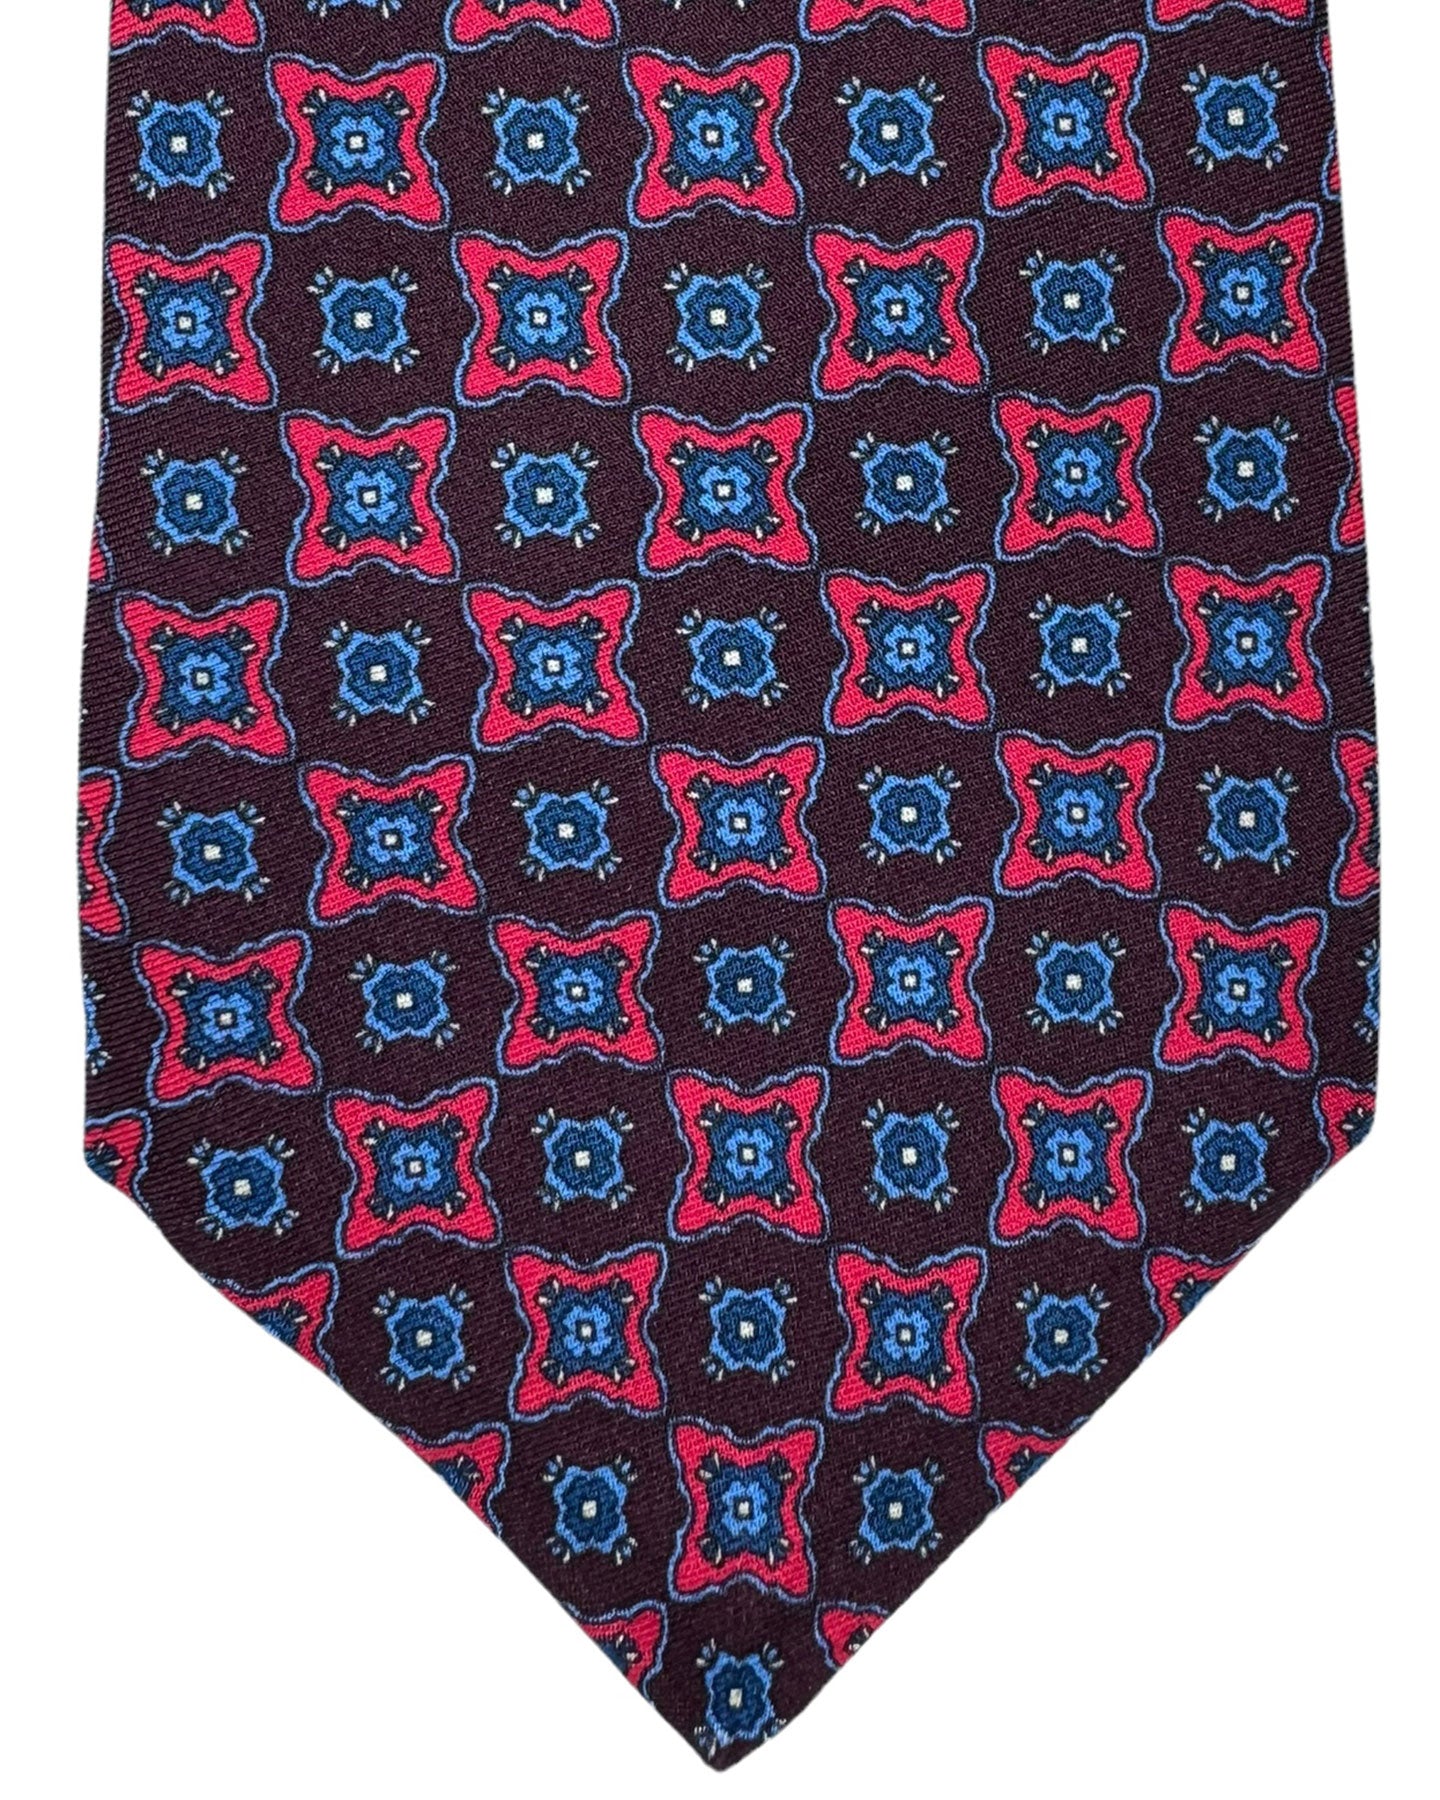  Sevenfold Necktie 